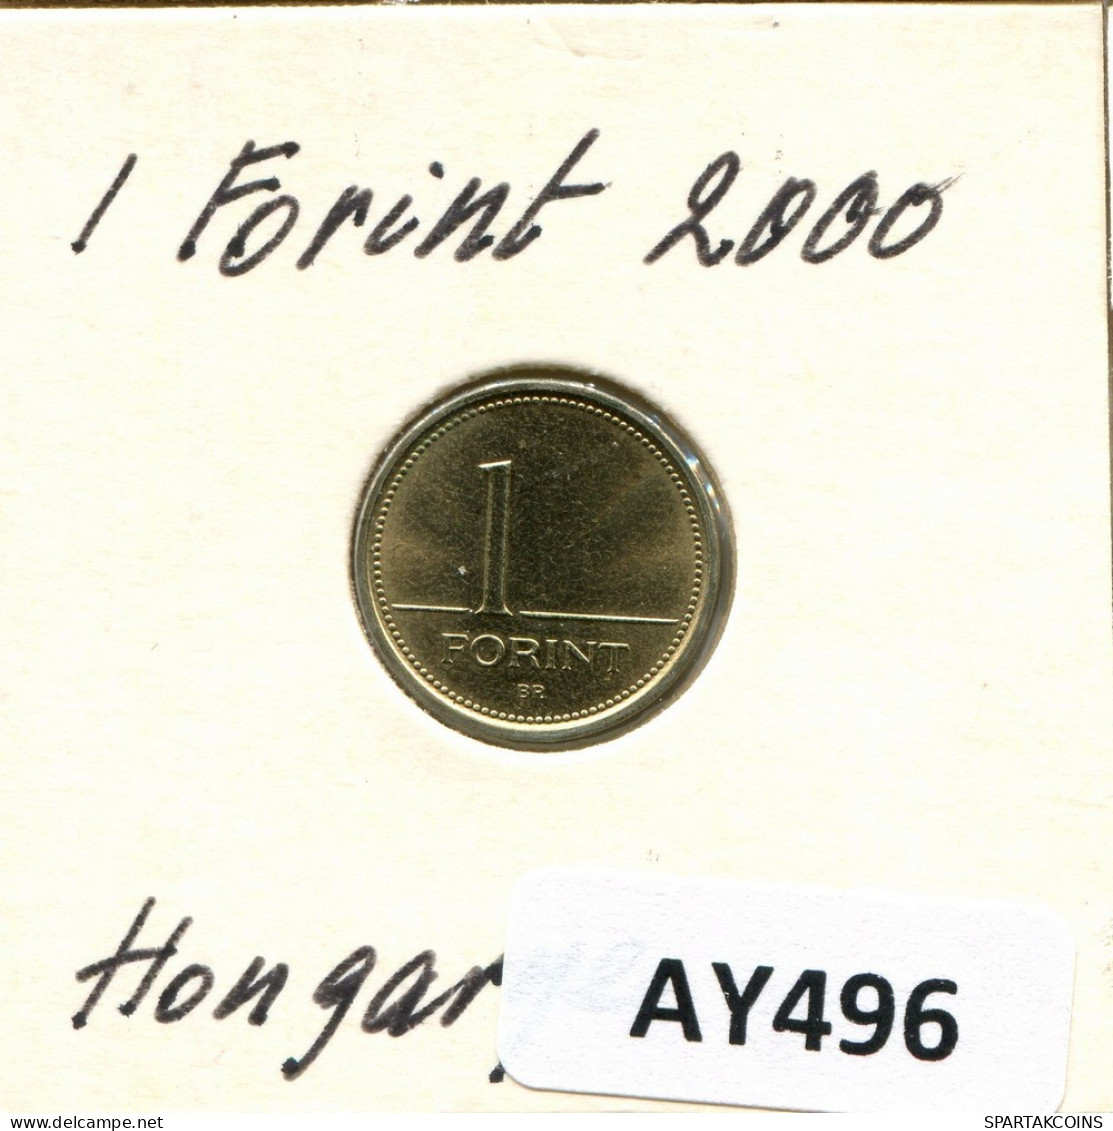 1 FORINT 2000 SIEBENBÜRGEN HUNGARY Münze #AY496.D.A - Ungheria